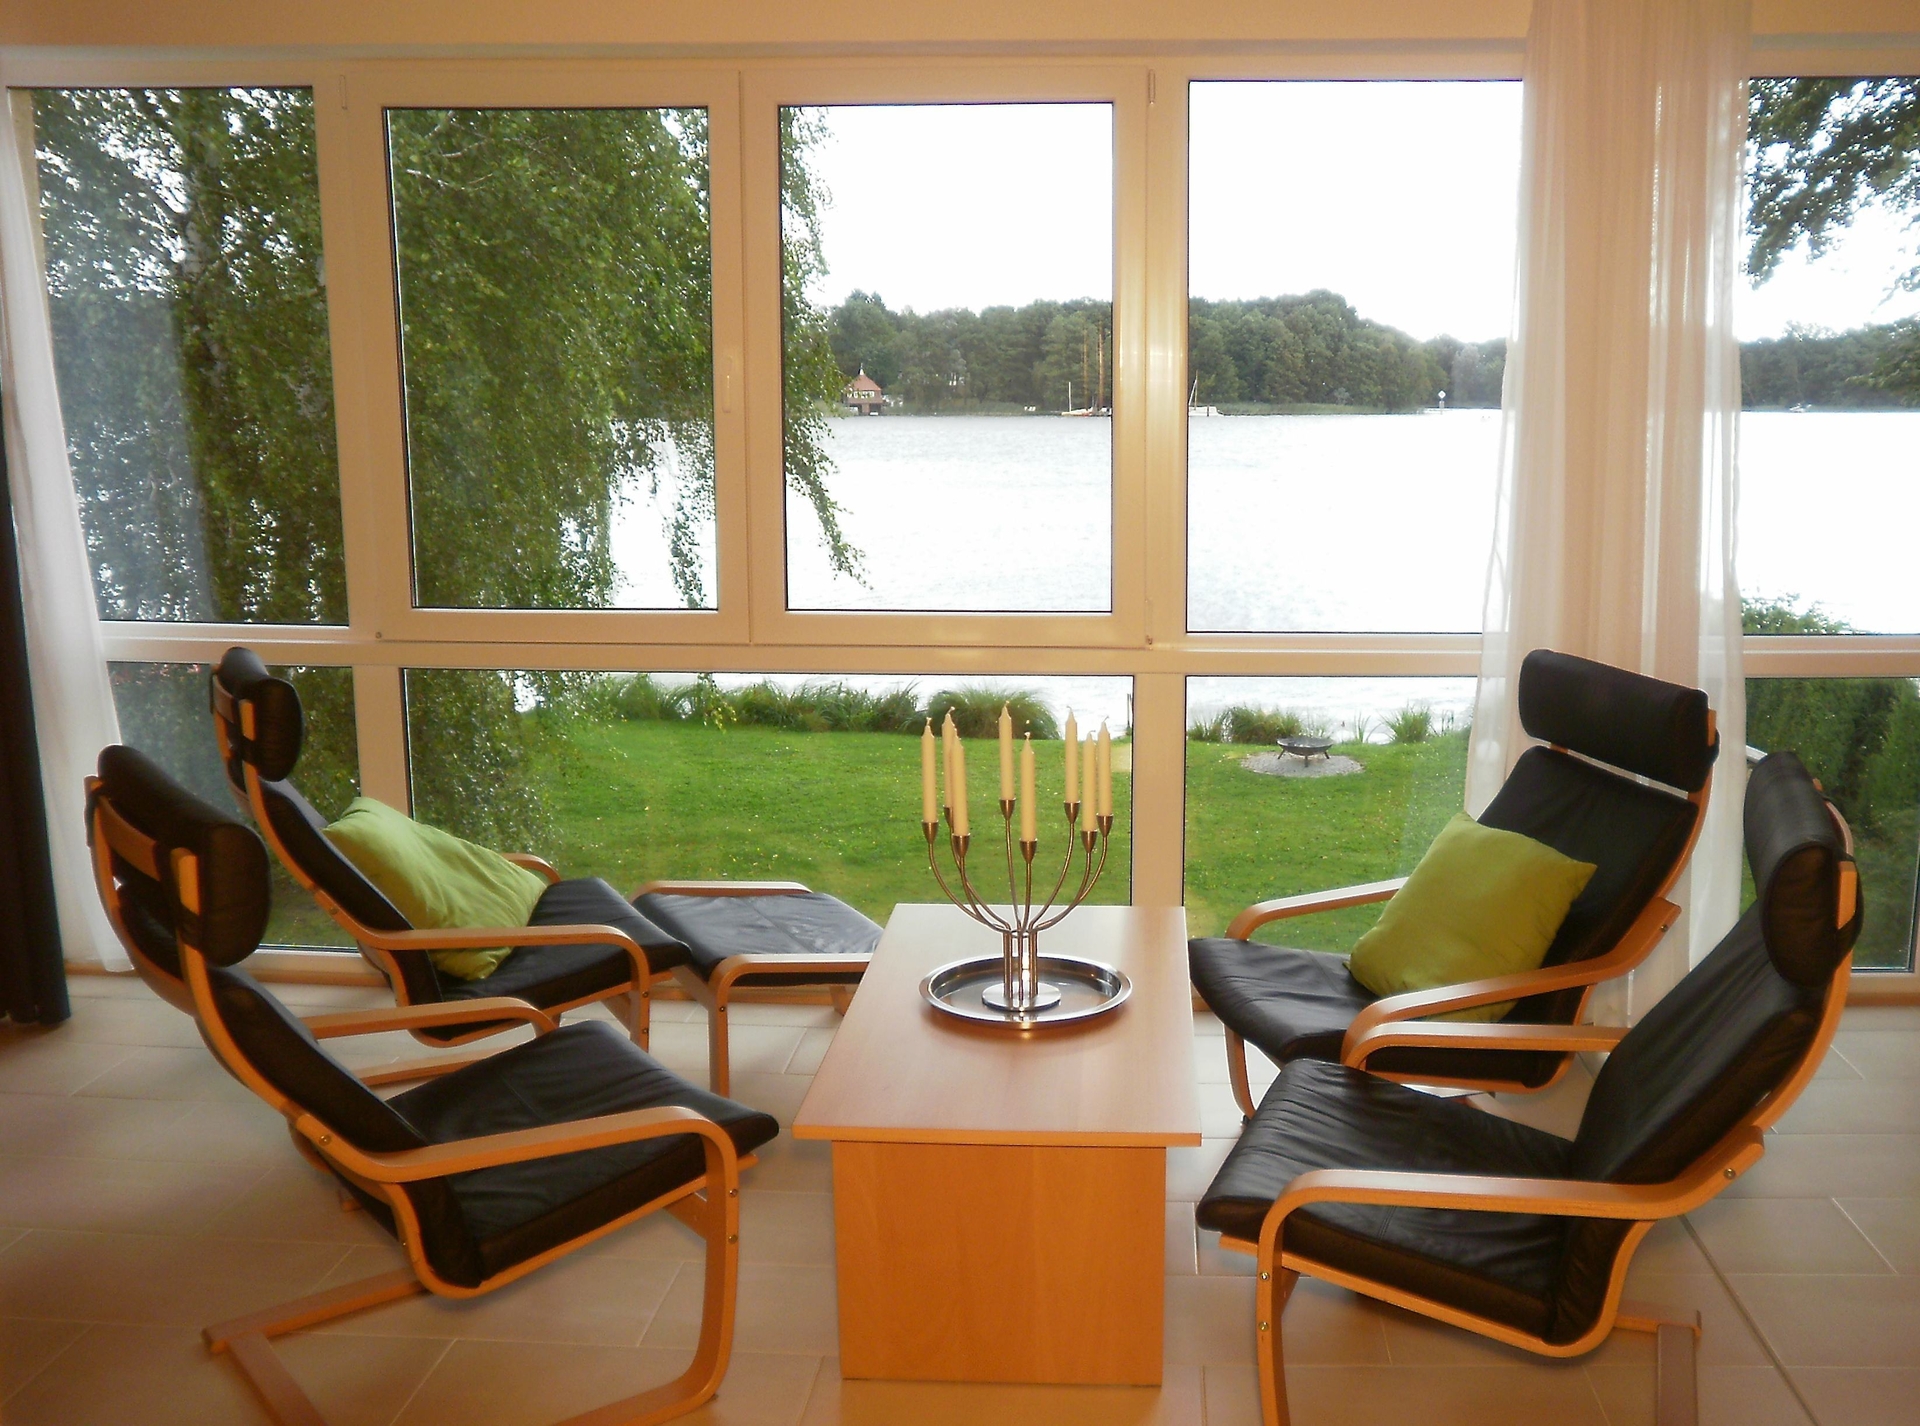 Bild: In dieser Wohnung gibt es im Wohnbereich eine lederbezogene Sitzgruppe mit Couchtisch und Panorama-Ausblick auf den Zemminsee.